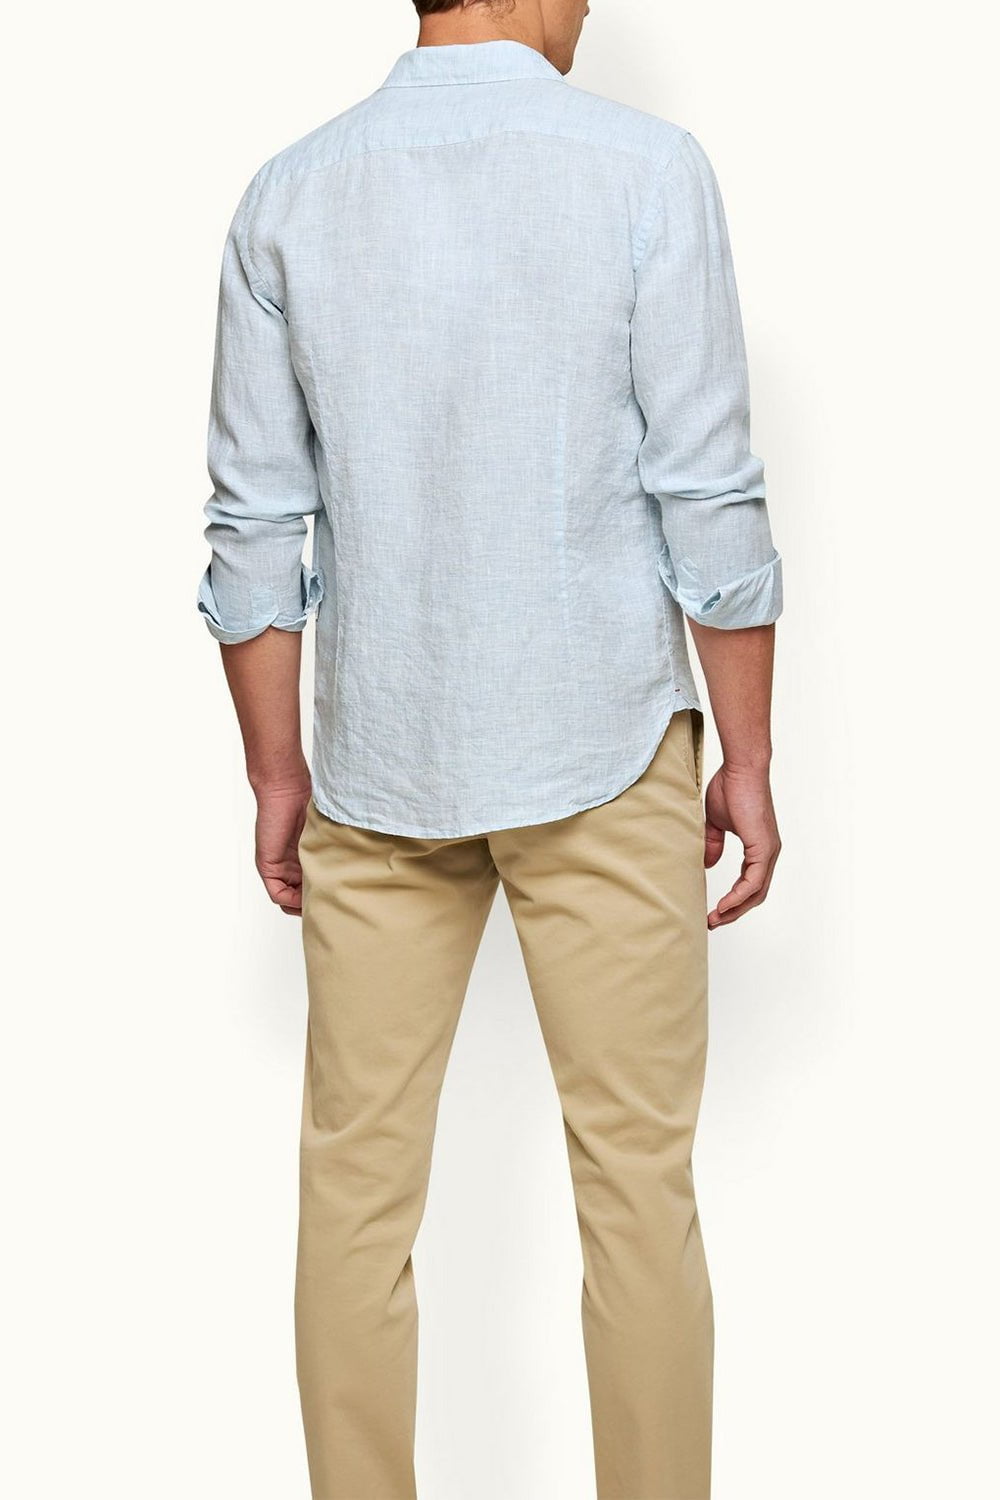 ORLEBAR BROWN-Giles Linen Shirt - Pale Blue-